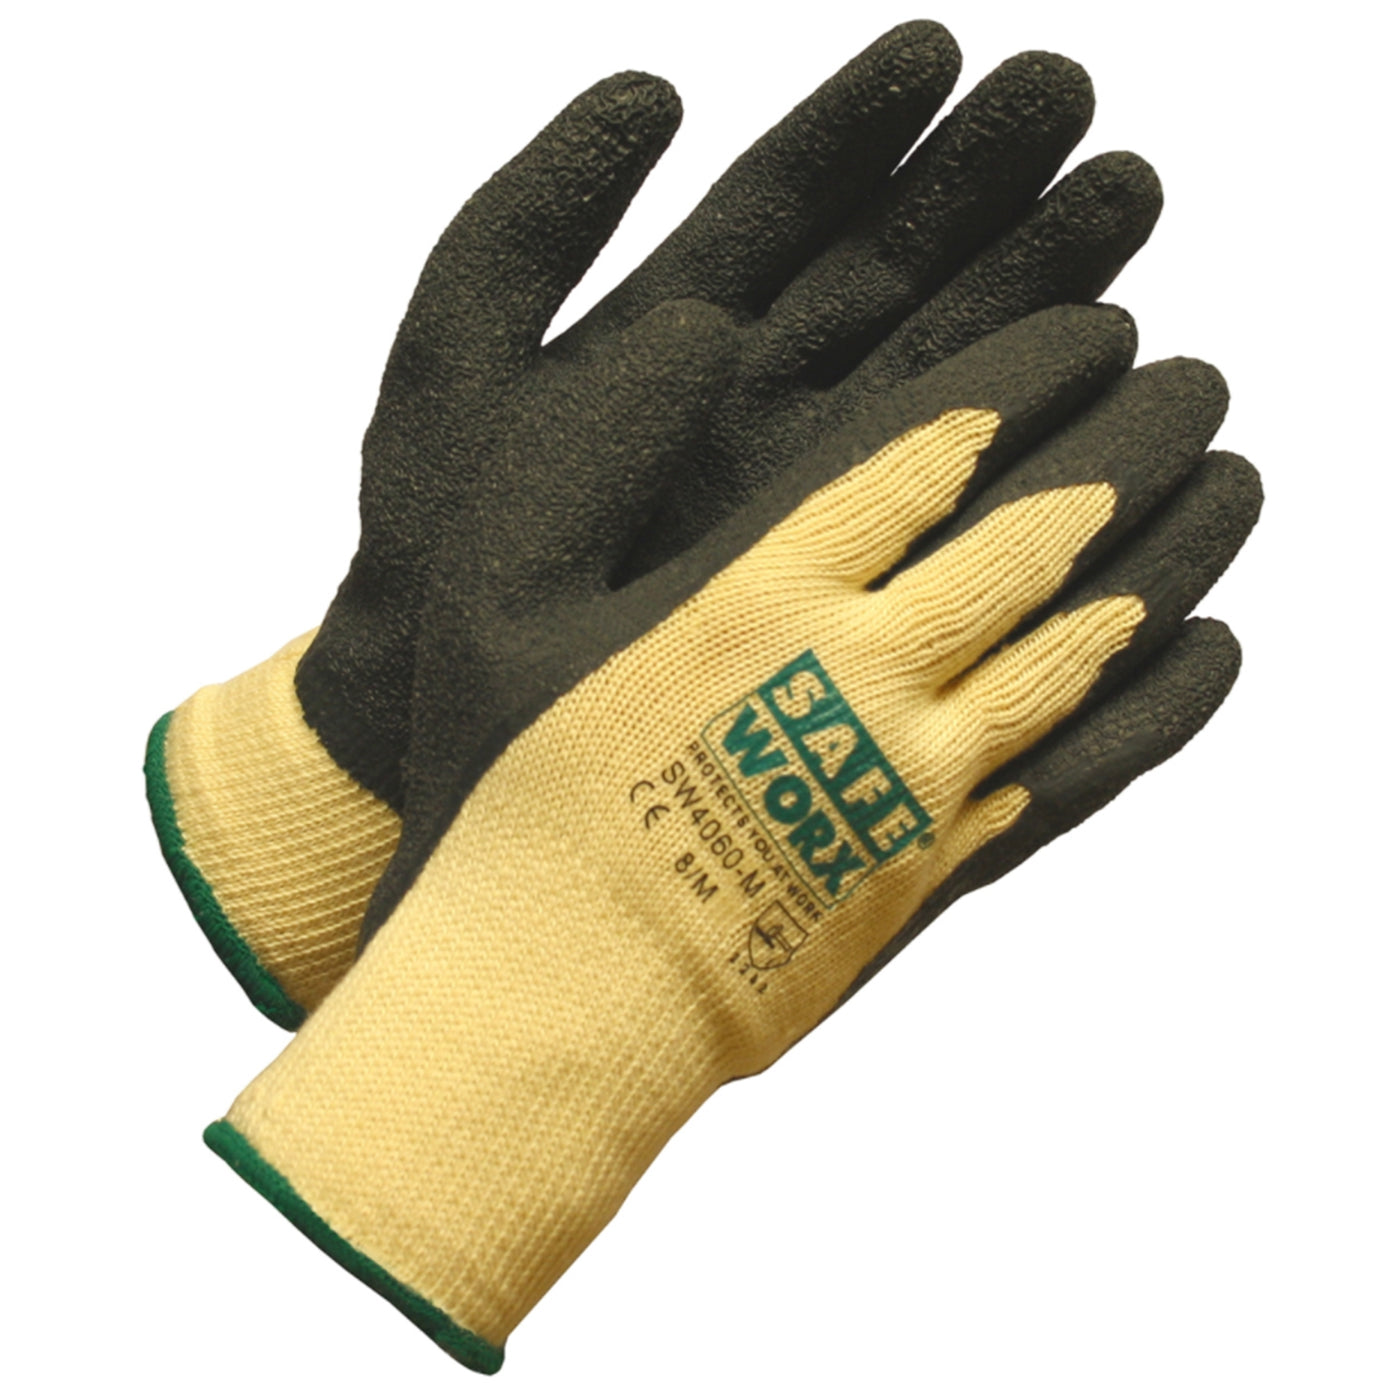 Work glove Latex doubled cotton glove Safeworx - Remlagret.se